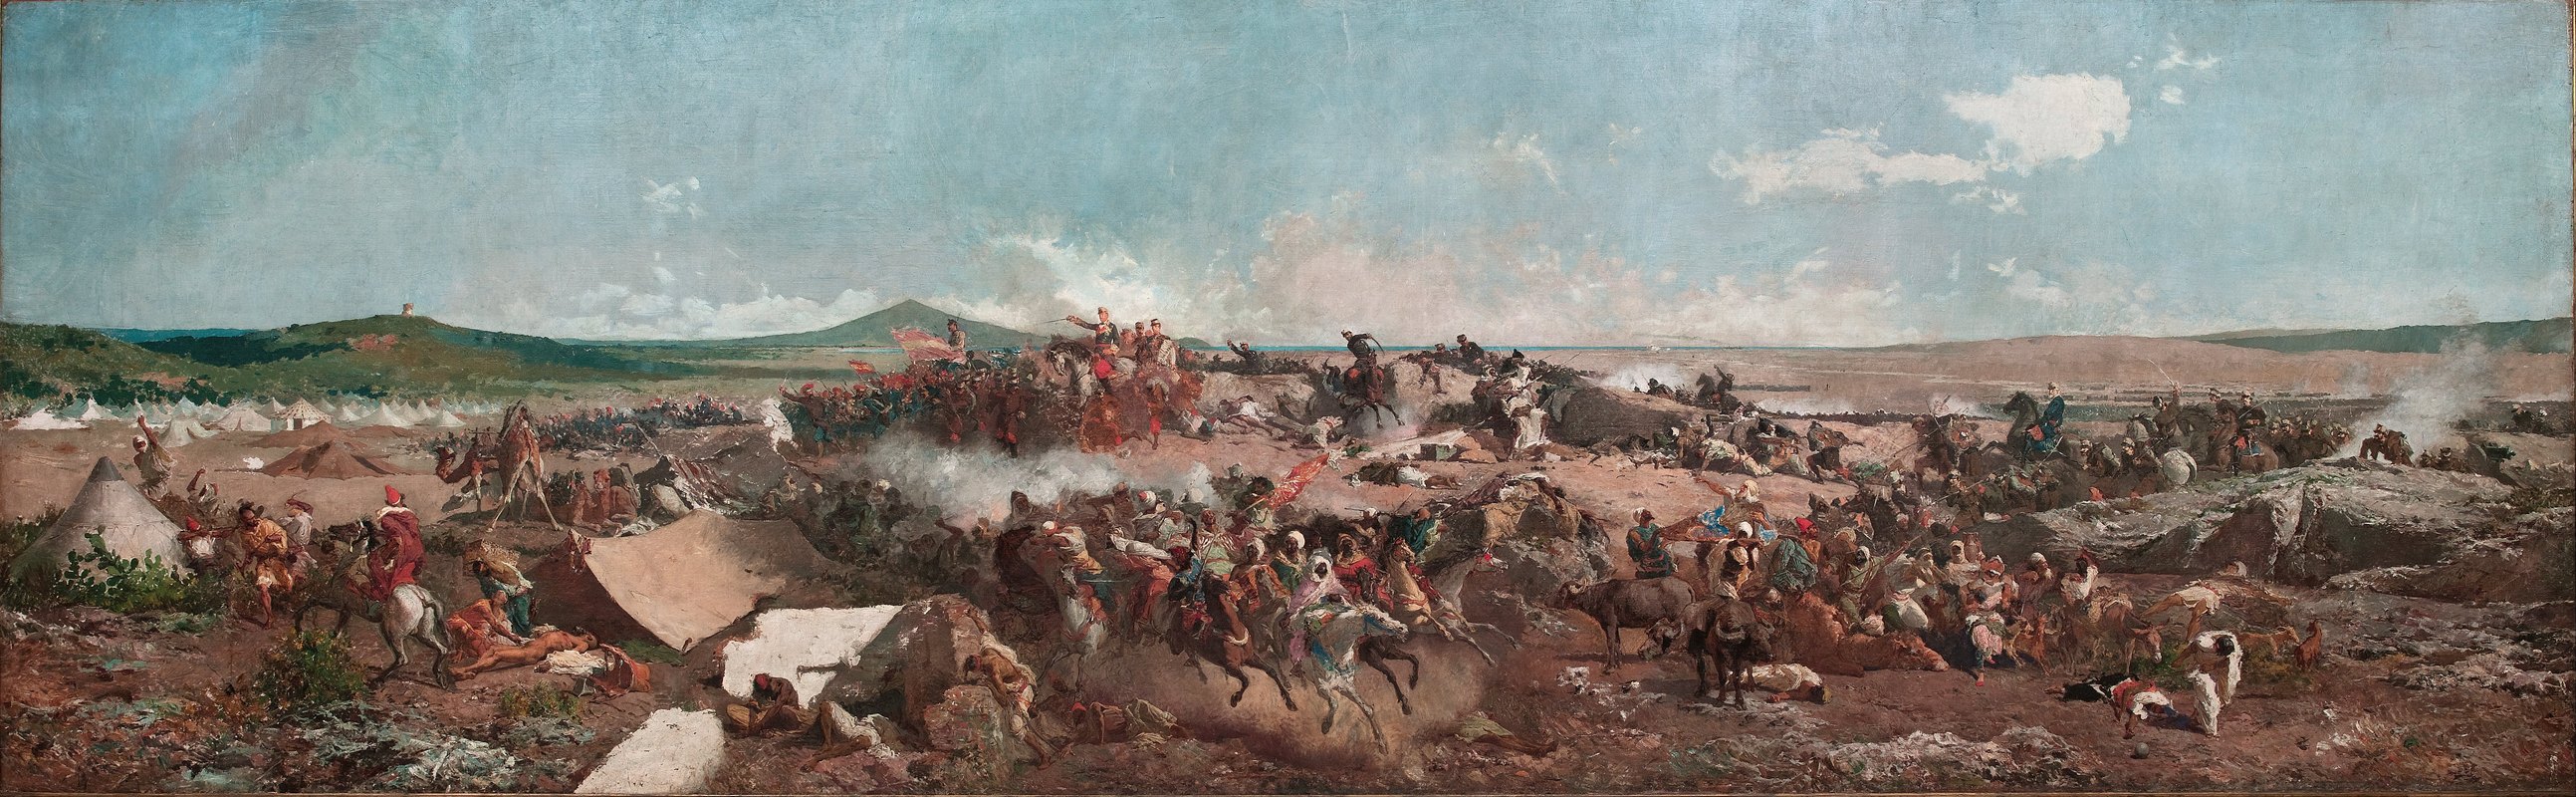 泰图安战役`The Battle of Tetouan (1862 ~ 1864) by Mariano Fortuny Marsal